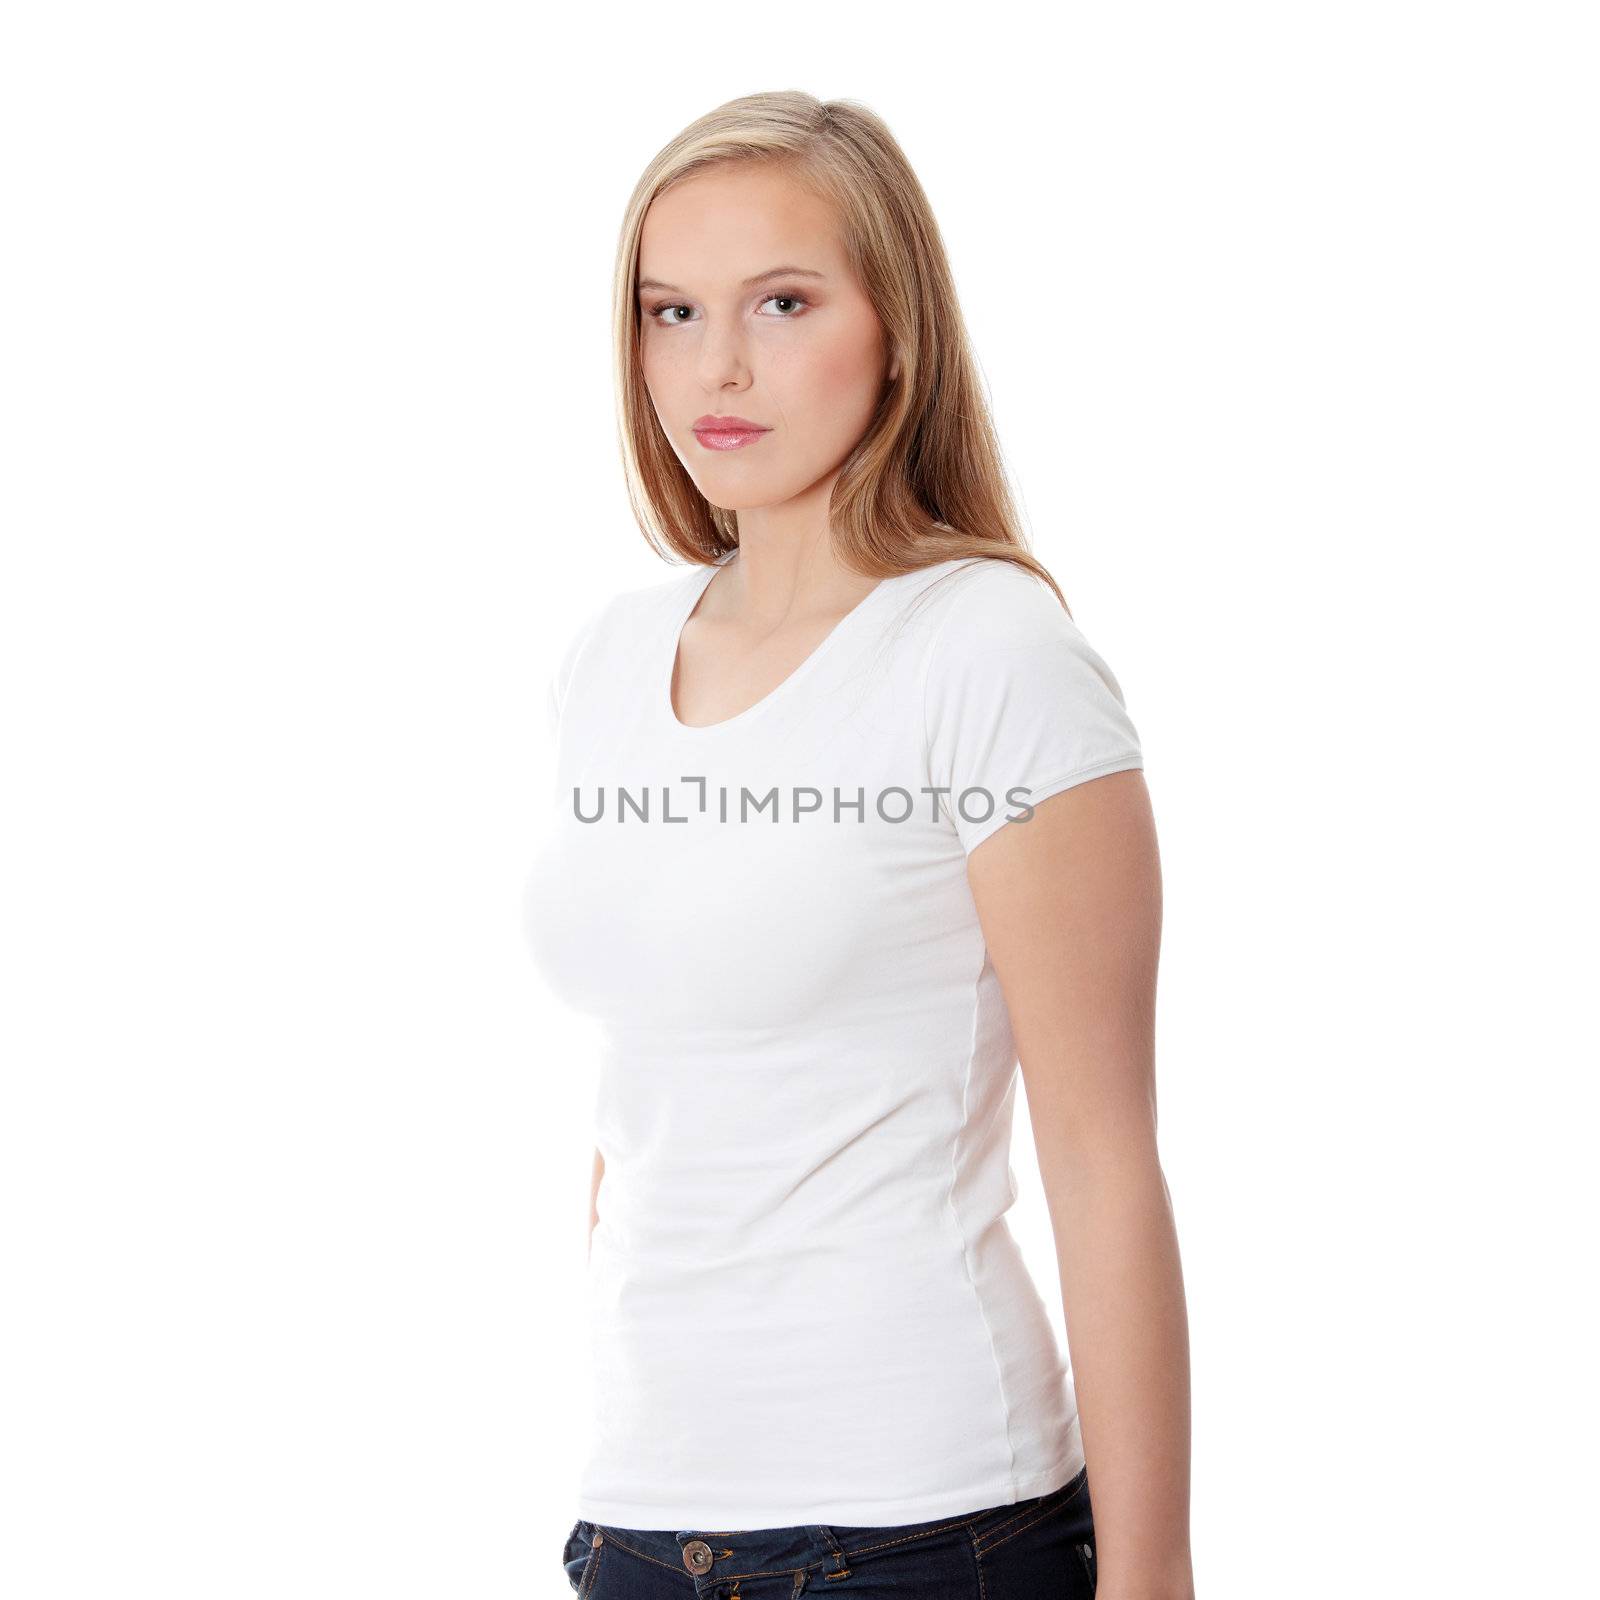 Teen girl isoalated on white background